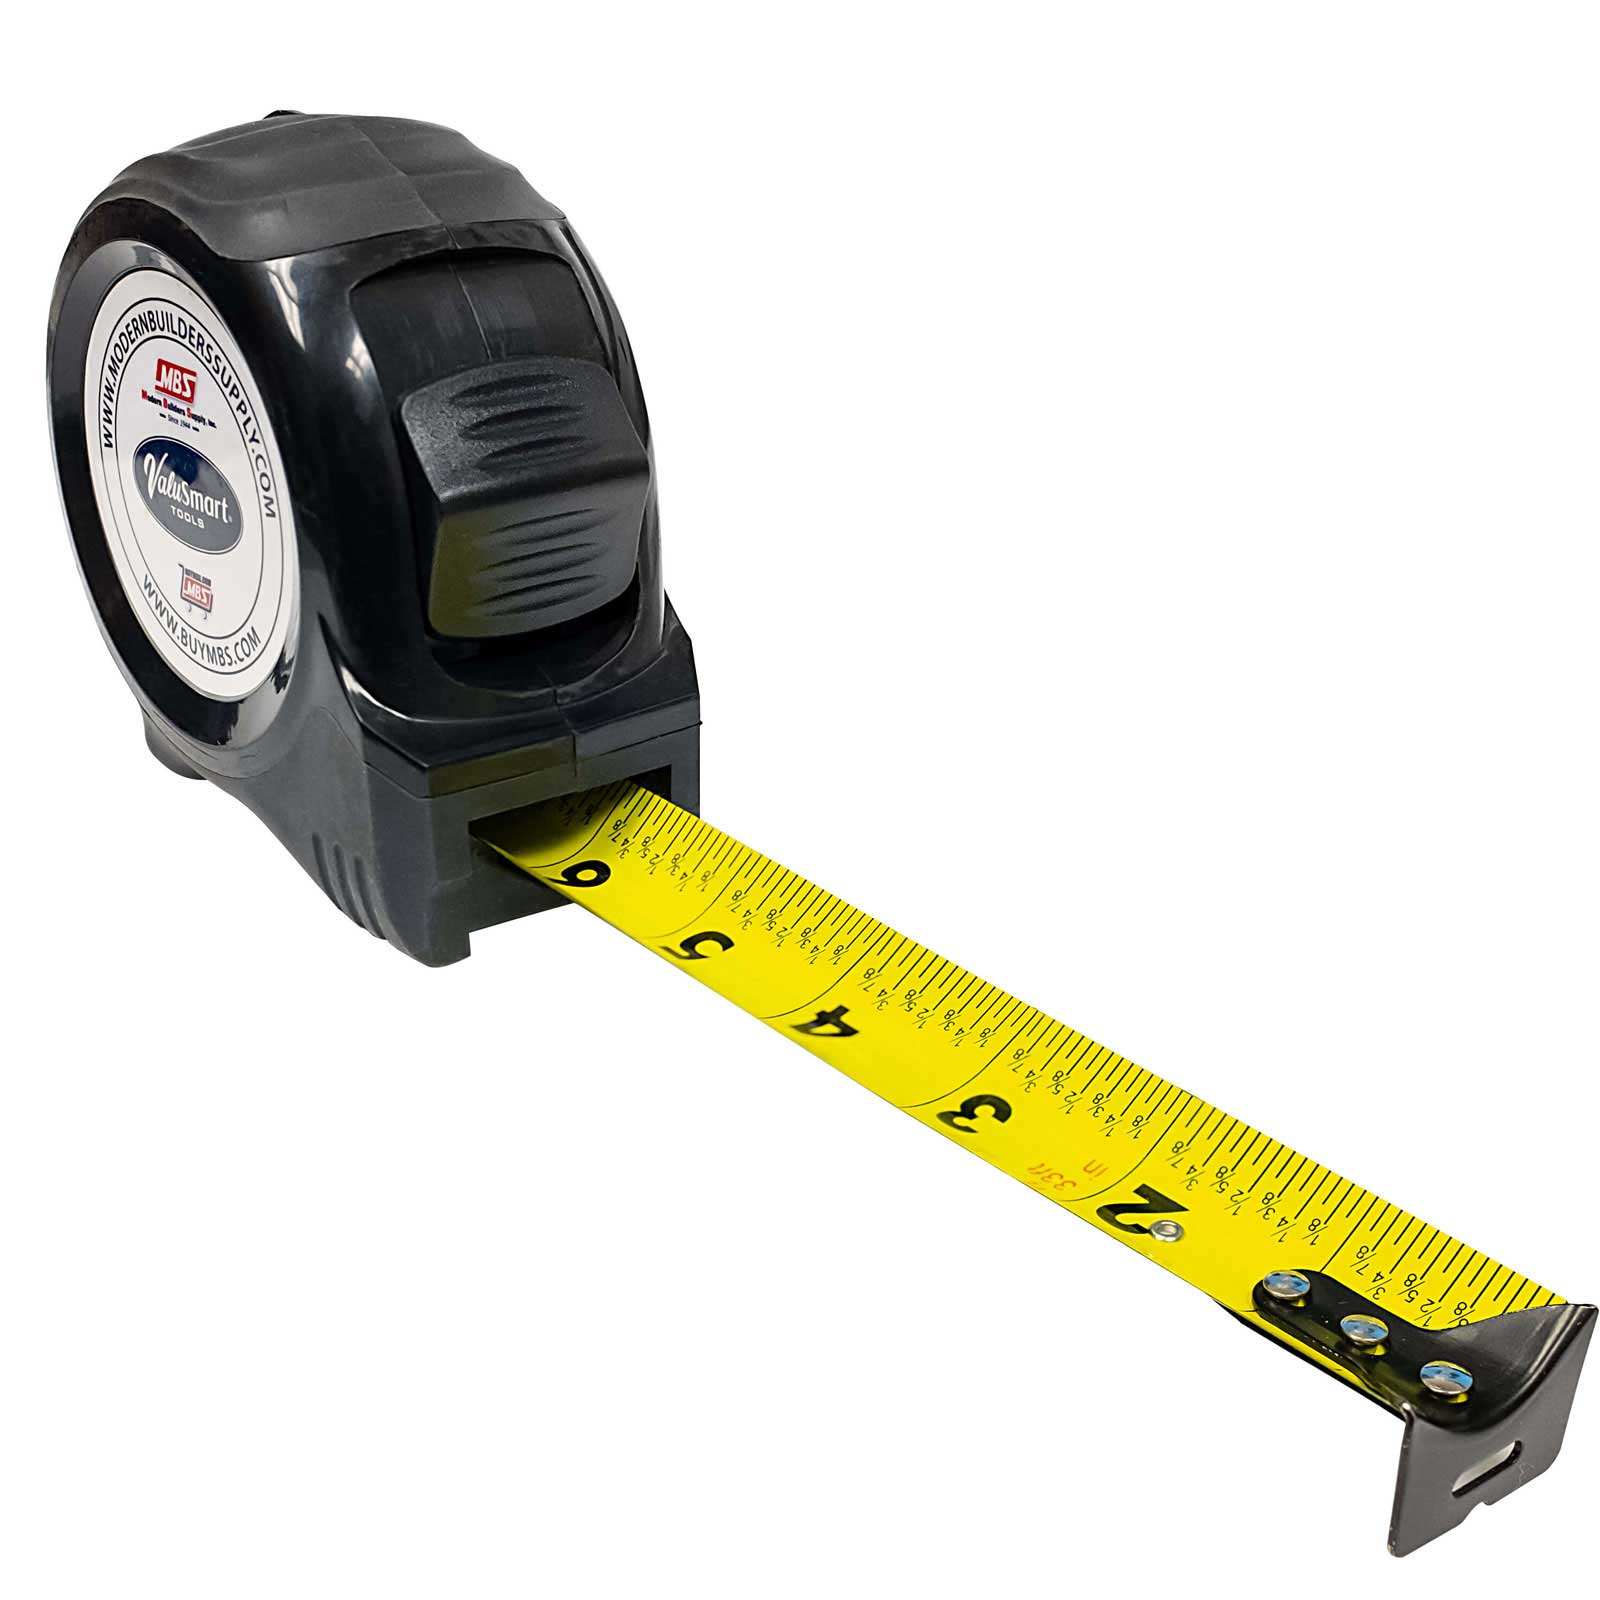 ValuSmart Heavy Duty Tape Measure